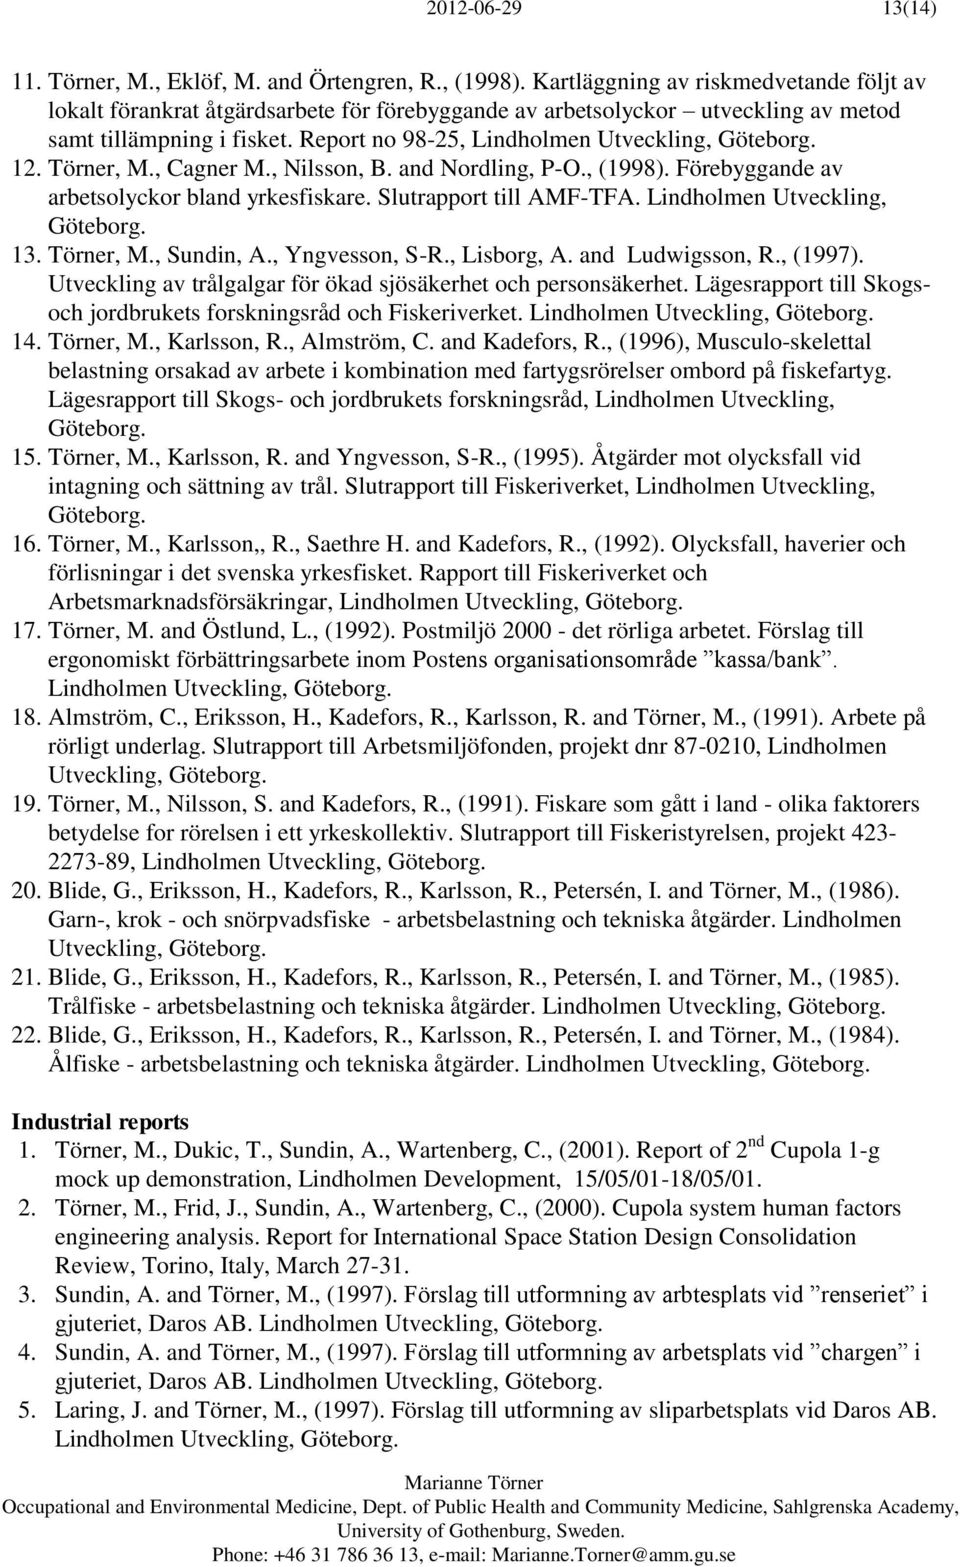 Report no 98-25, Lindholmen Utveckling, Göteborg. 12. Törner, M., Cagner M., Nilsson, B. and Nordling, P-O., (1998). Förebyggande av arbetsolyckor bland yrkesfiskare. Slutrapport till AMF-TFA.